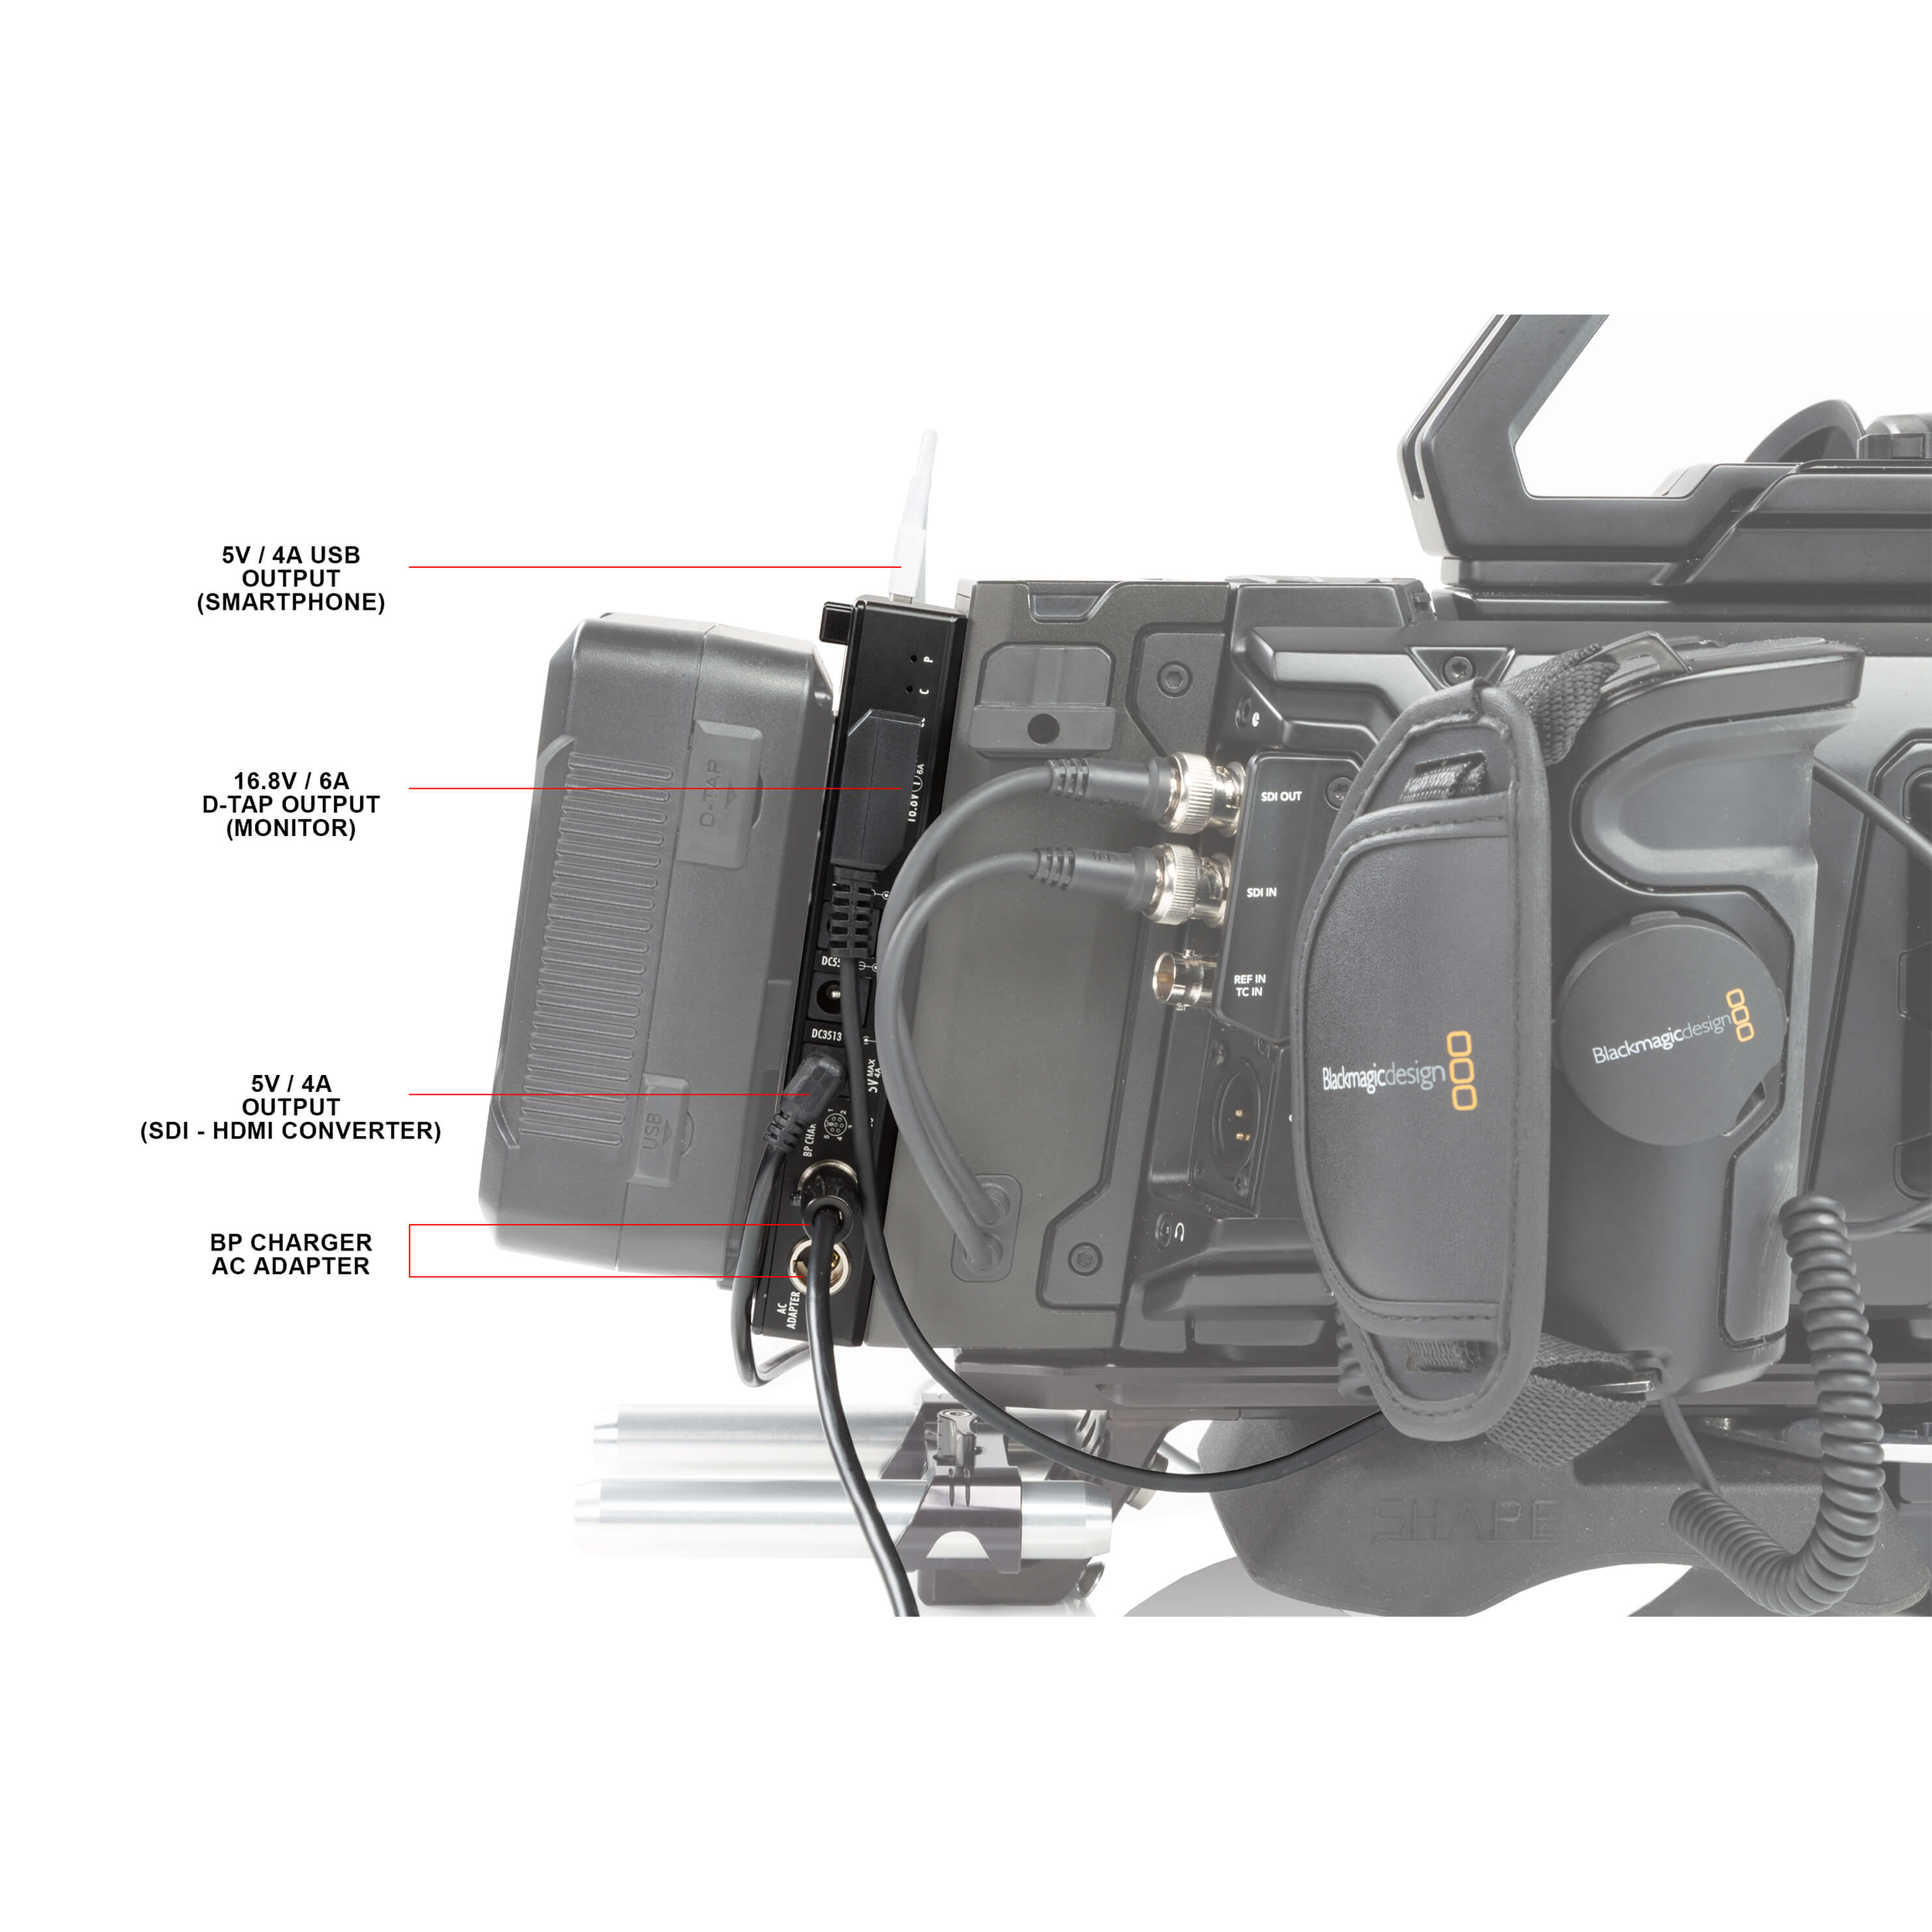 SHAPE J-Box Camera Power & Charger for Blackmagic URSA Mini/URSA Mini Pro (V-Mount)